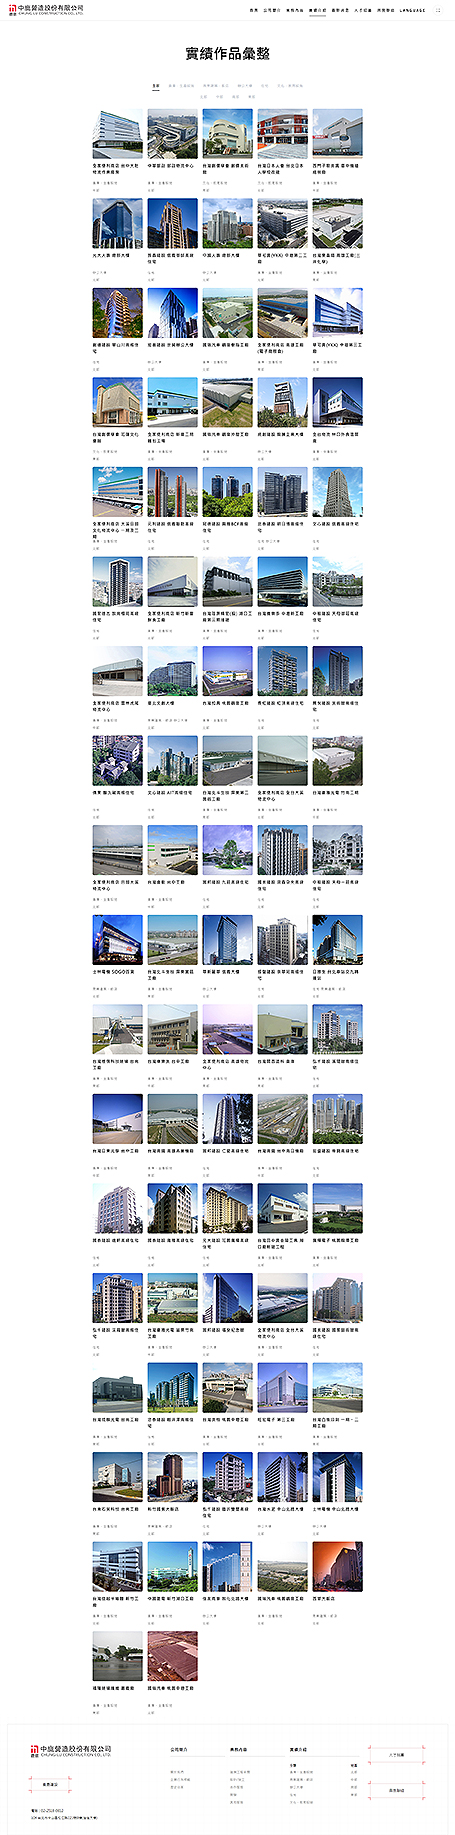 中鹿營造,鹿島建設,中鹿營造網頁設計,Chung-Lu Construction,網頁設計  style=